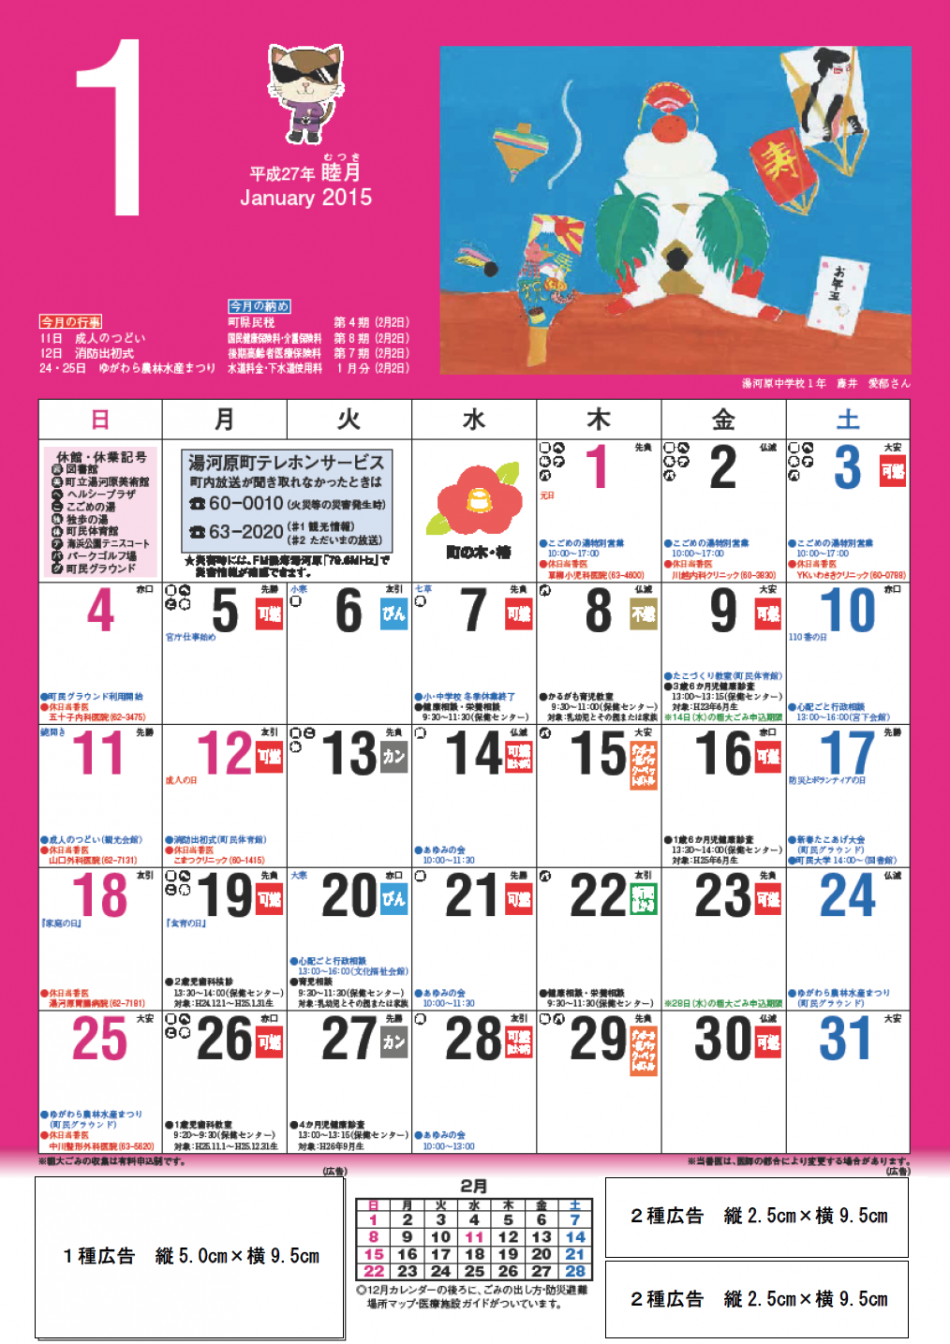 町民カレンダー1種広告1種広告　30,000円